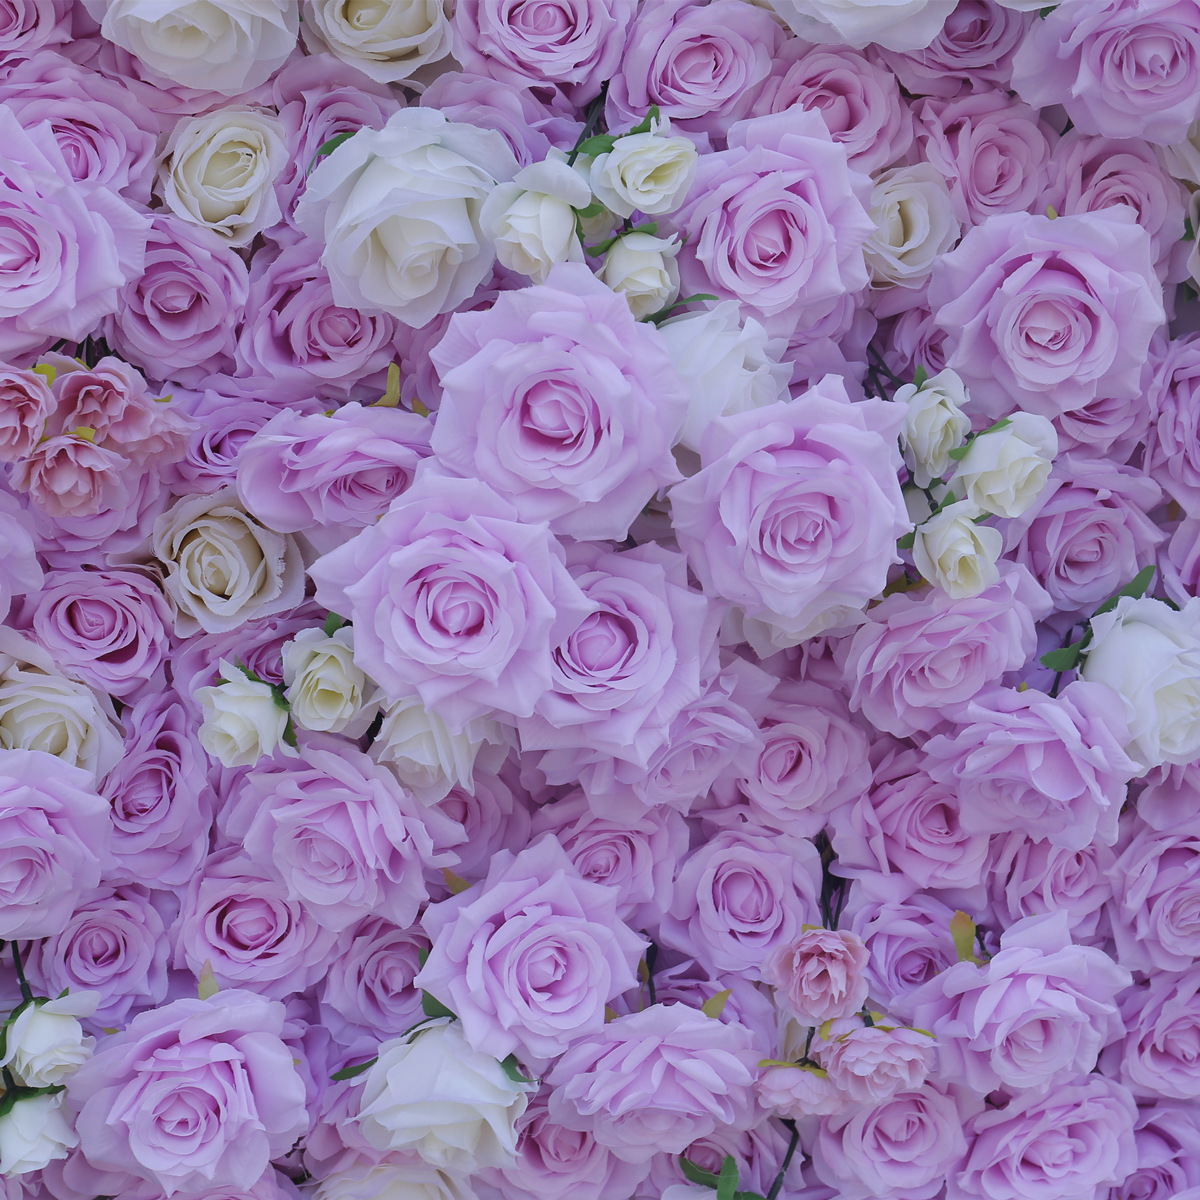 Gesimuleerde bloemenmuur met stoffen achtergrond achtergrondmuur 5D driedimensionale huwelijksdecoratie huwelijksdecoratie rekwisieten